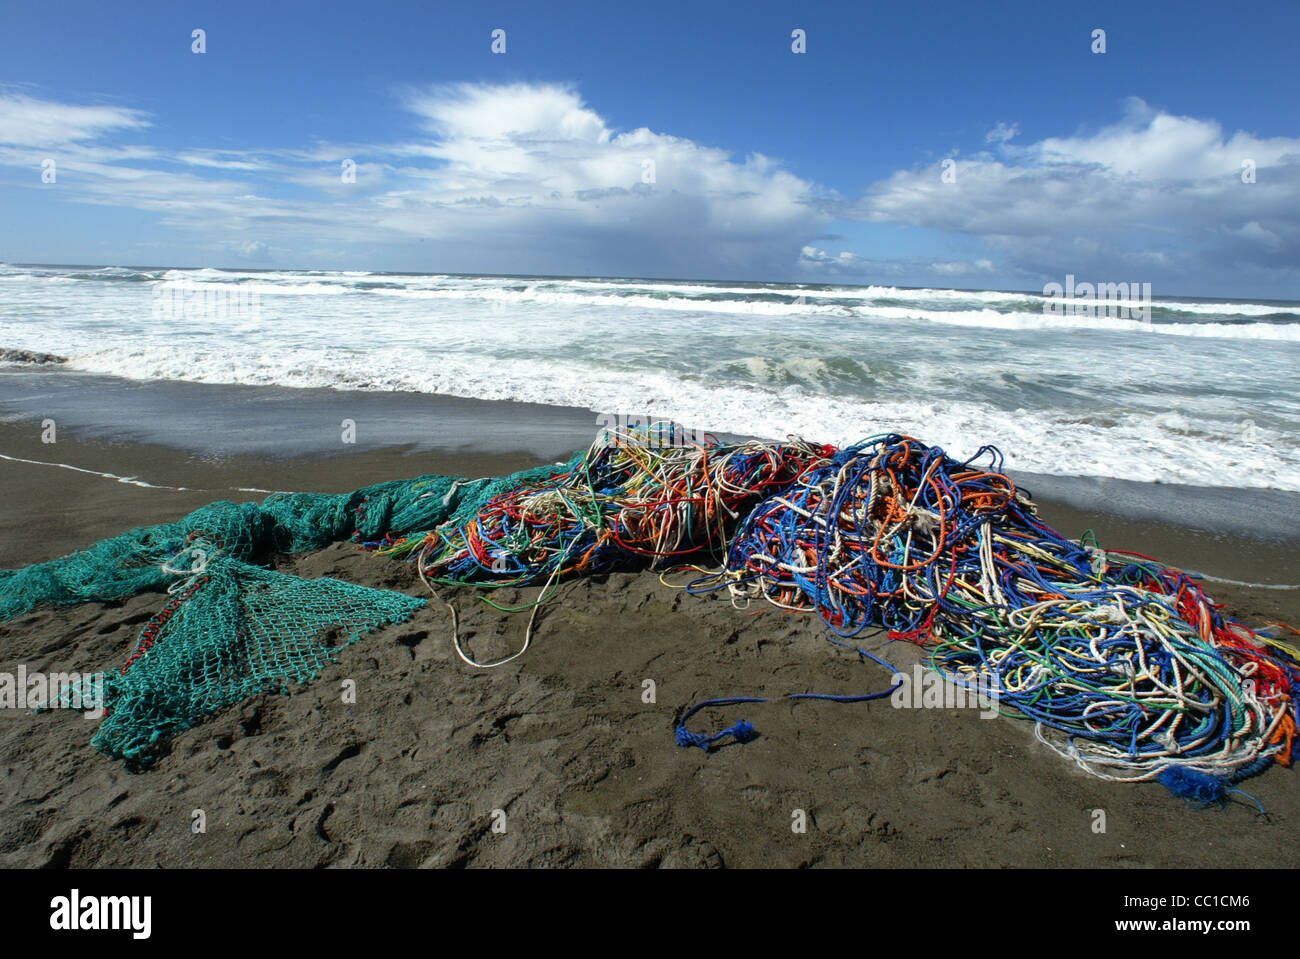 Jeter les filets de pêche échoués sur une plage près de l'Oregon à Bandon causant la litière et un danger pour la faune Banque D'Images